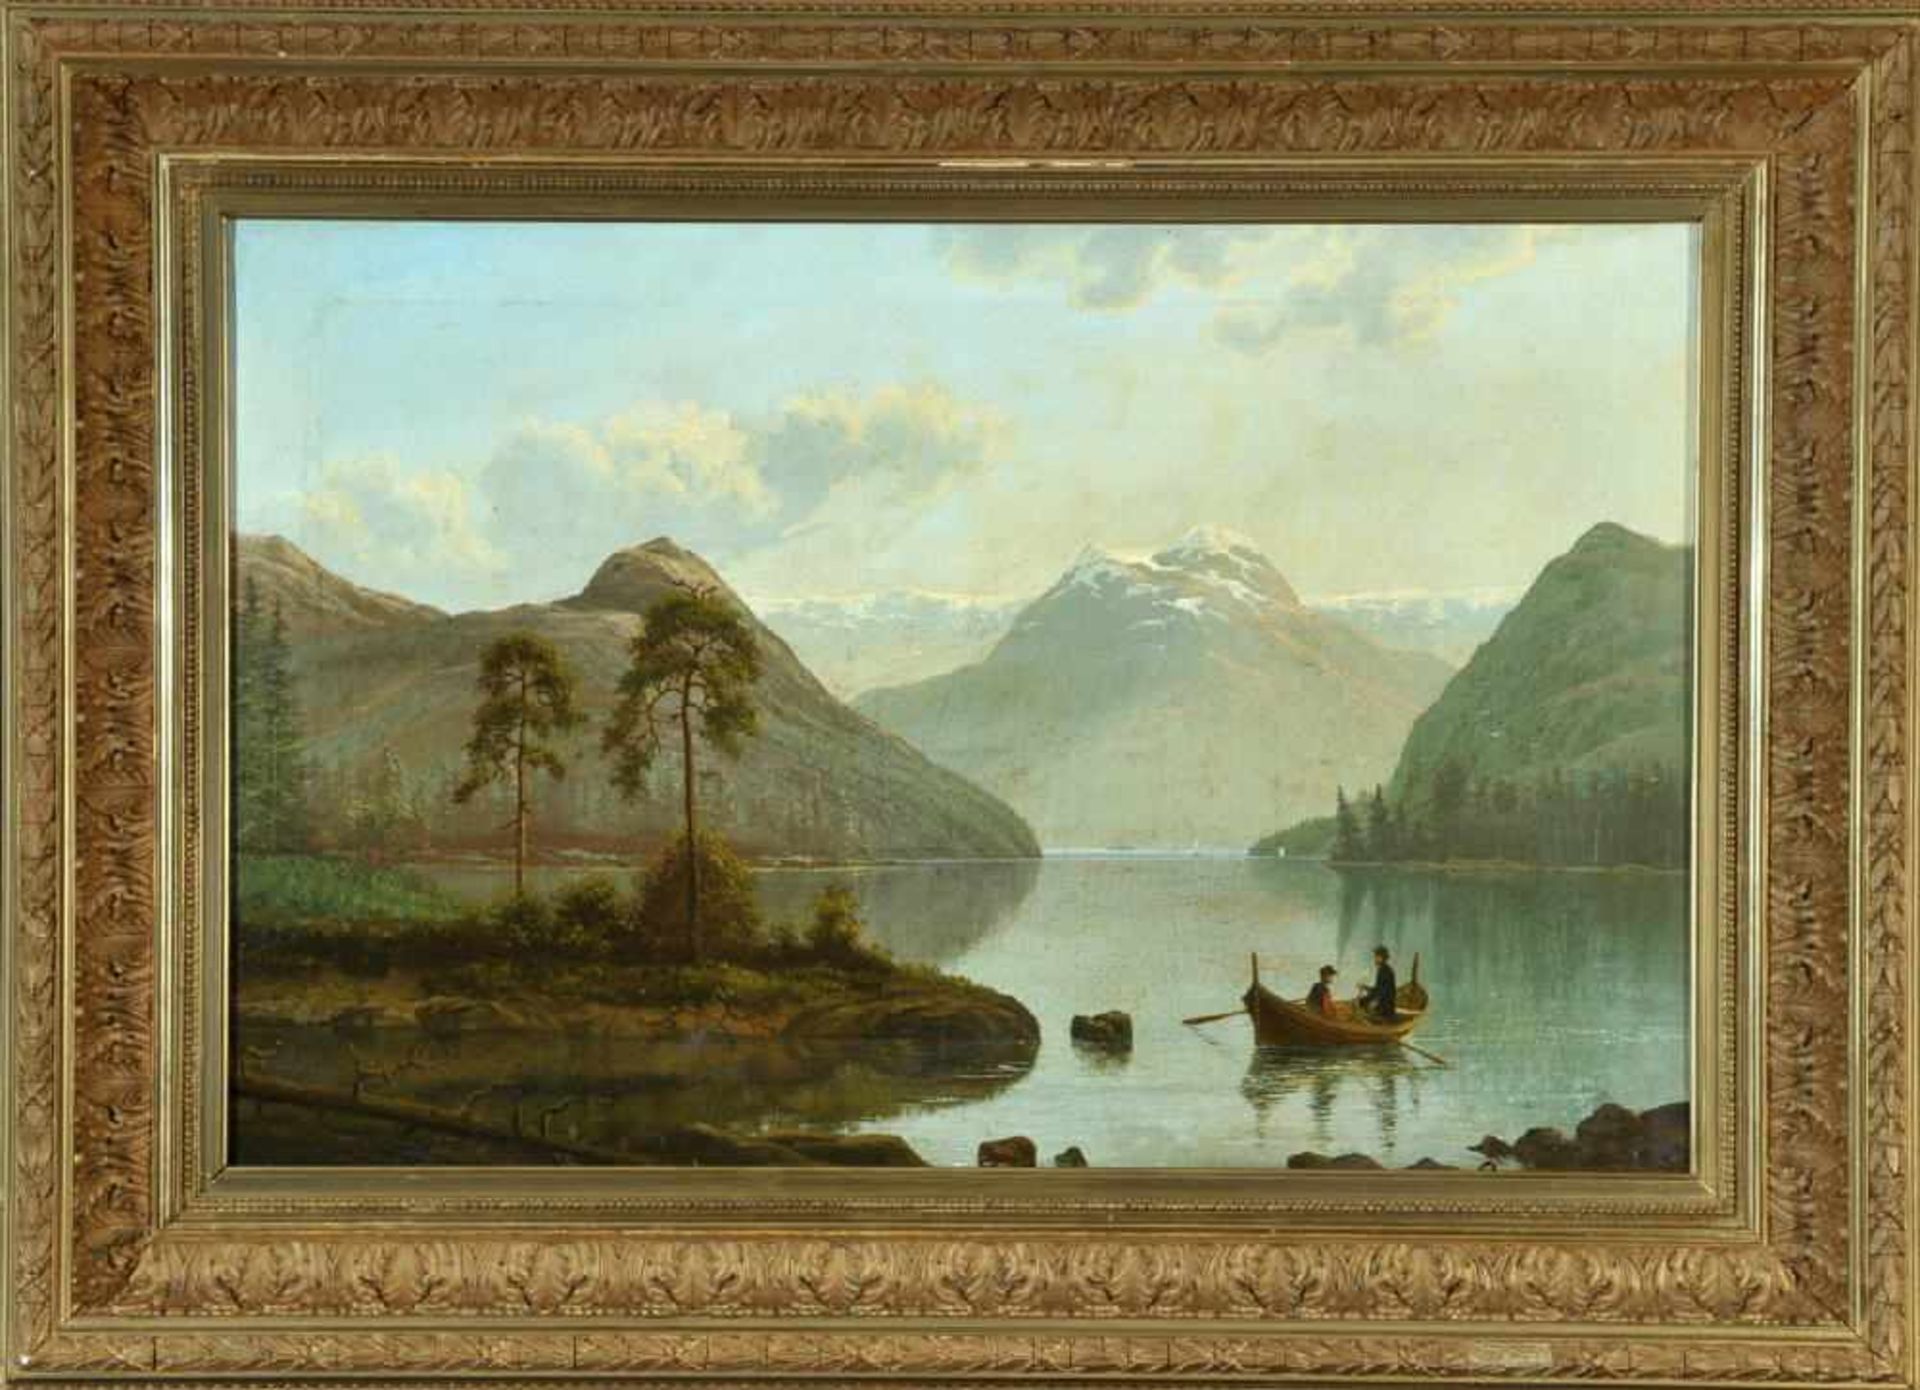 Landschaftsmaler des 19. Jh.Öl/Lwd, 44 x 65,5 cm, " Bergsee mit Fischern ", u.r. undeutl. sign. "